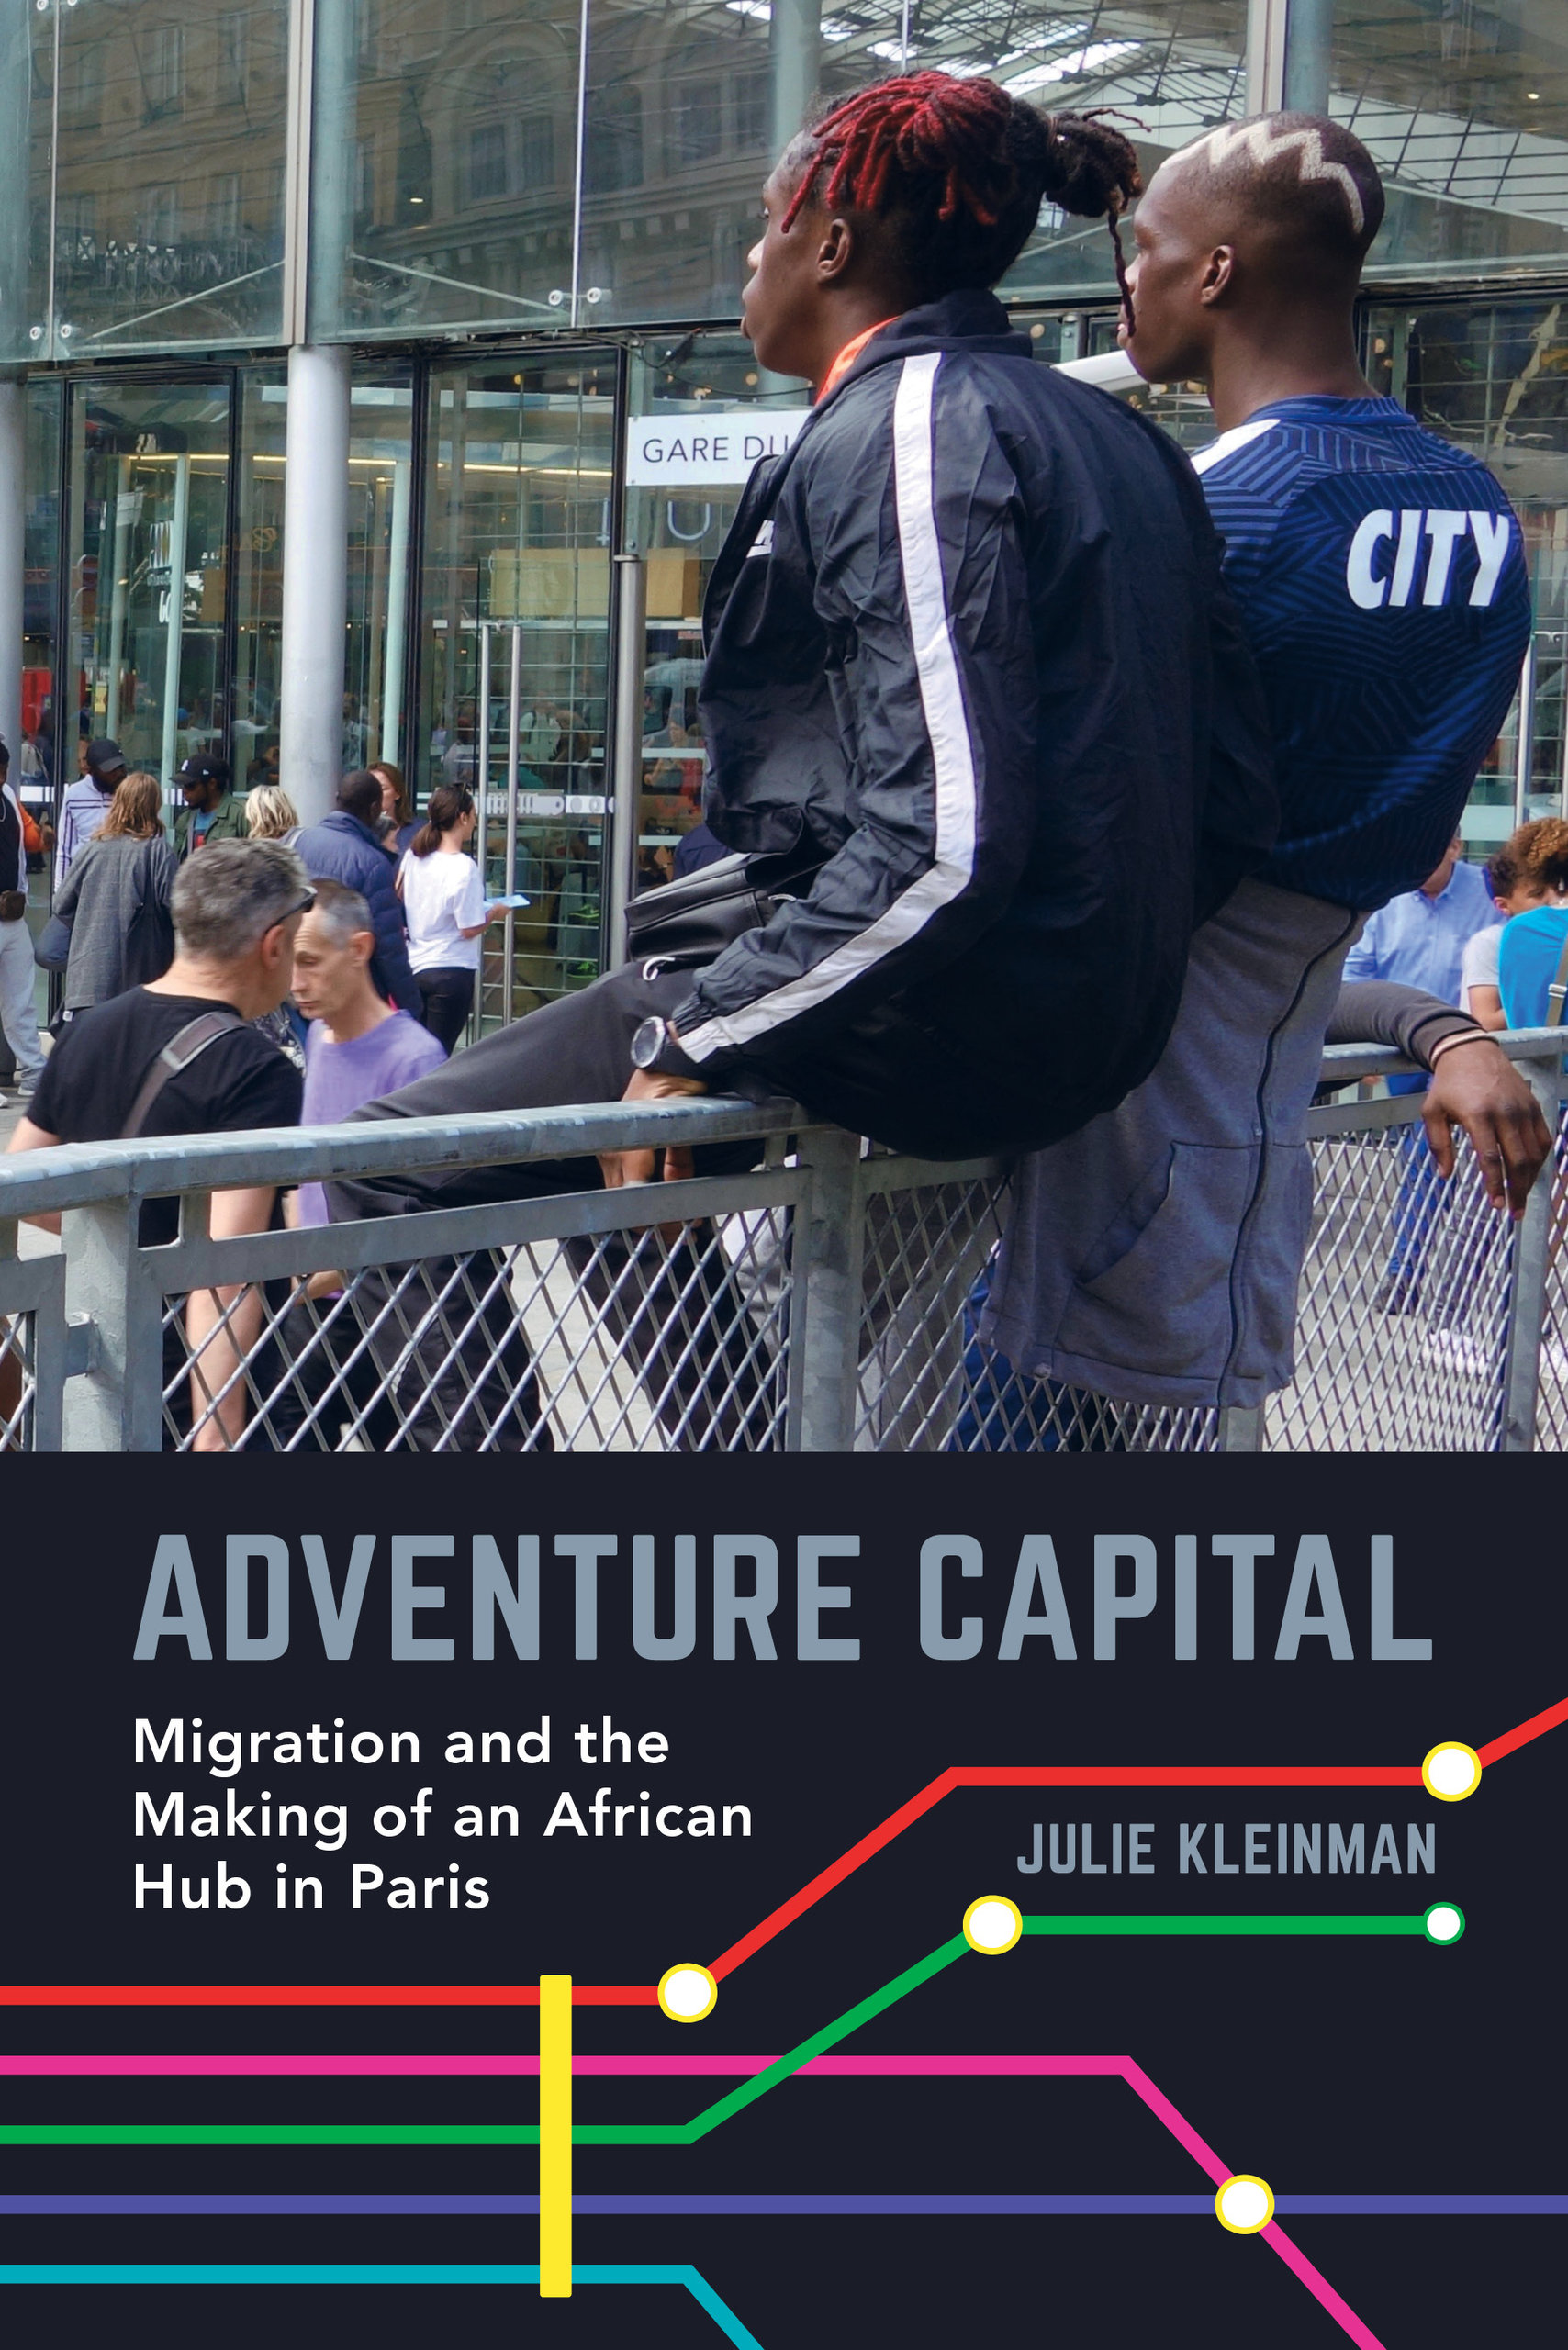 Adventure Capital by Julie Kleinman